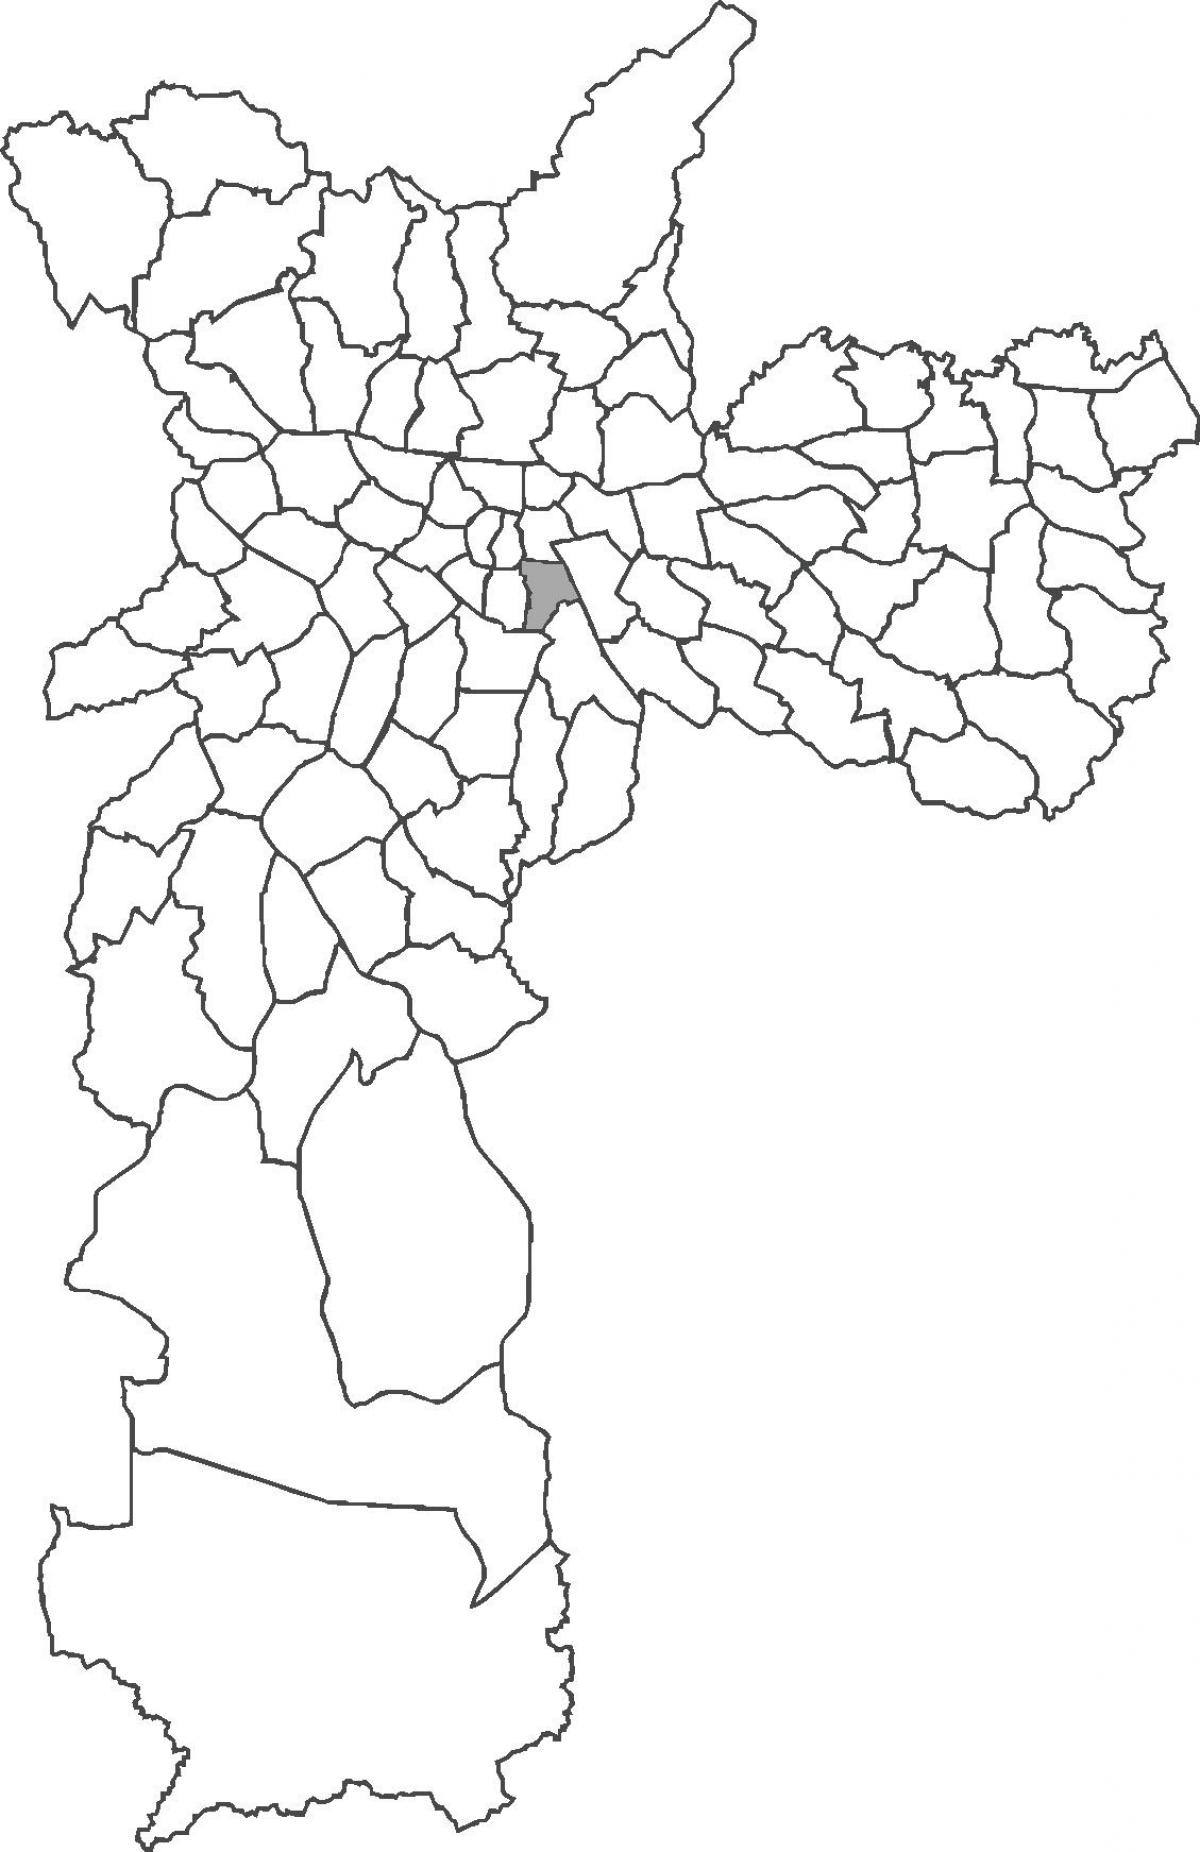 Քարտեզ Камбуси շրջան